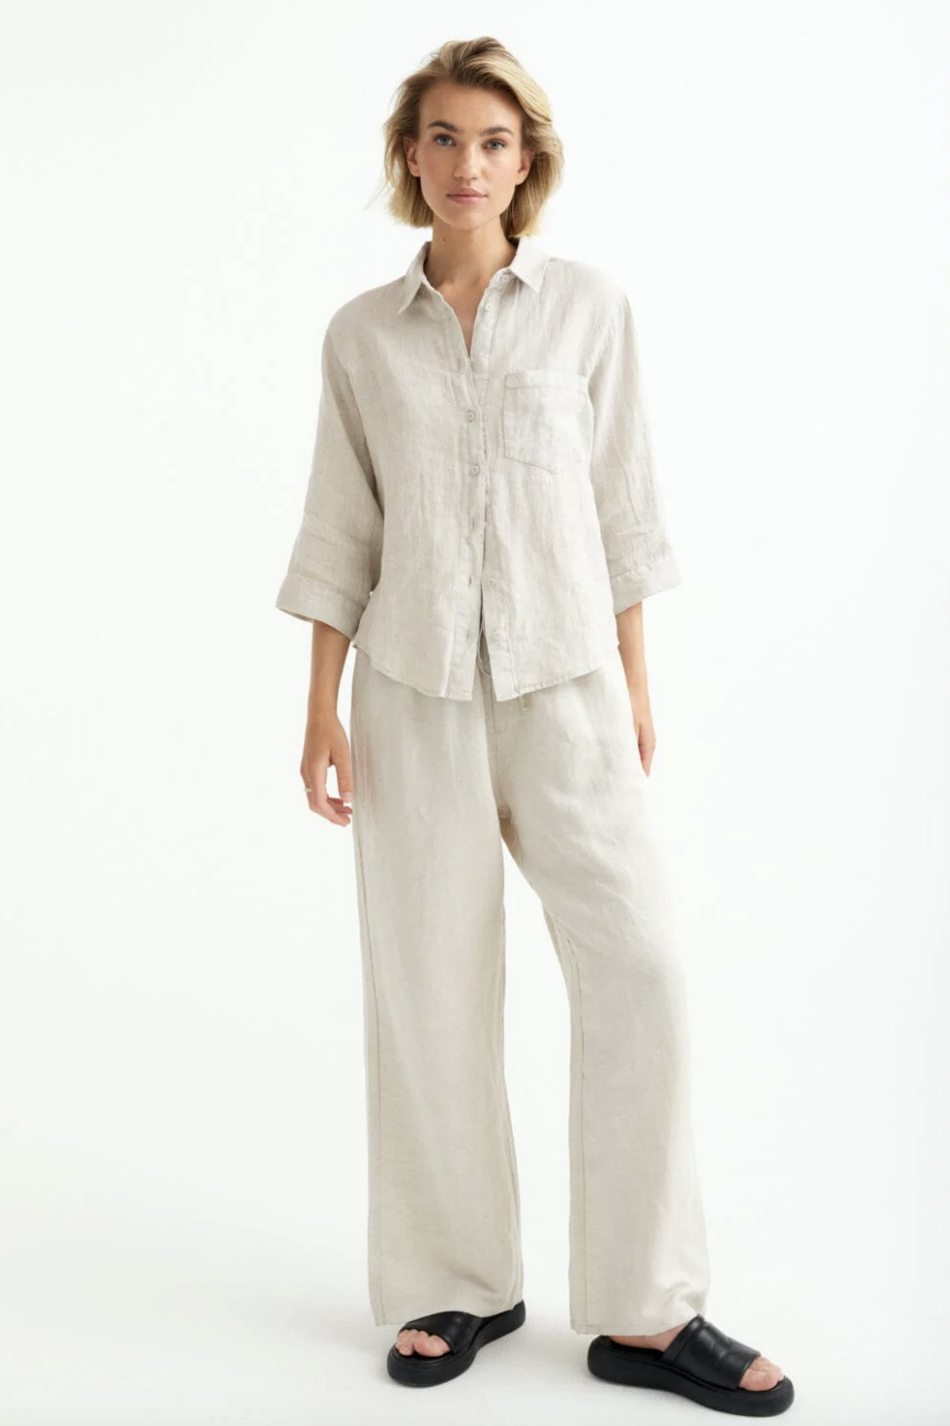 Kort skjorta med trekvartsärm i skön bambulyocell och linne, från Movesgood.